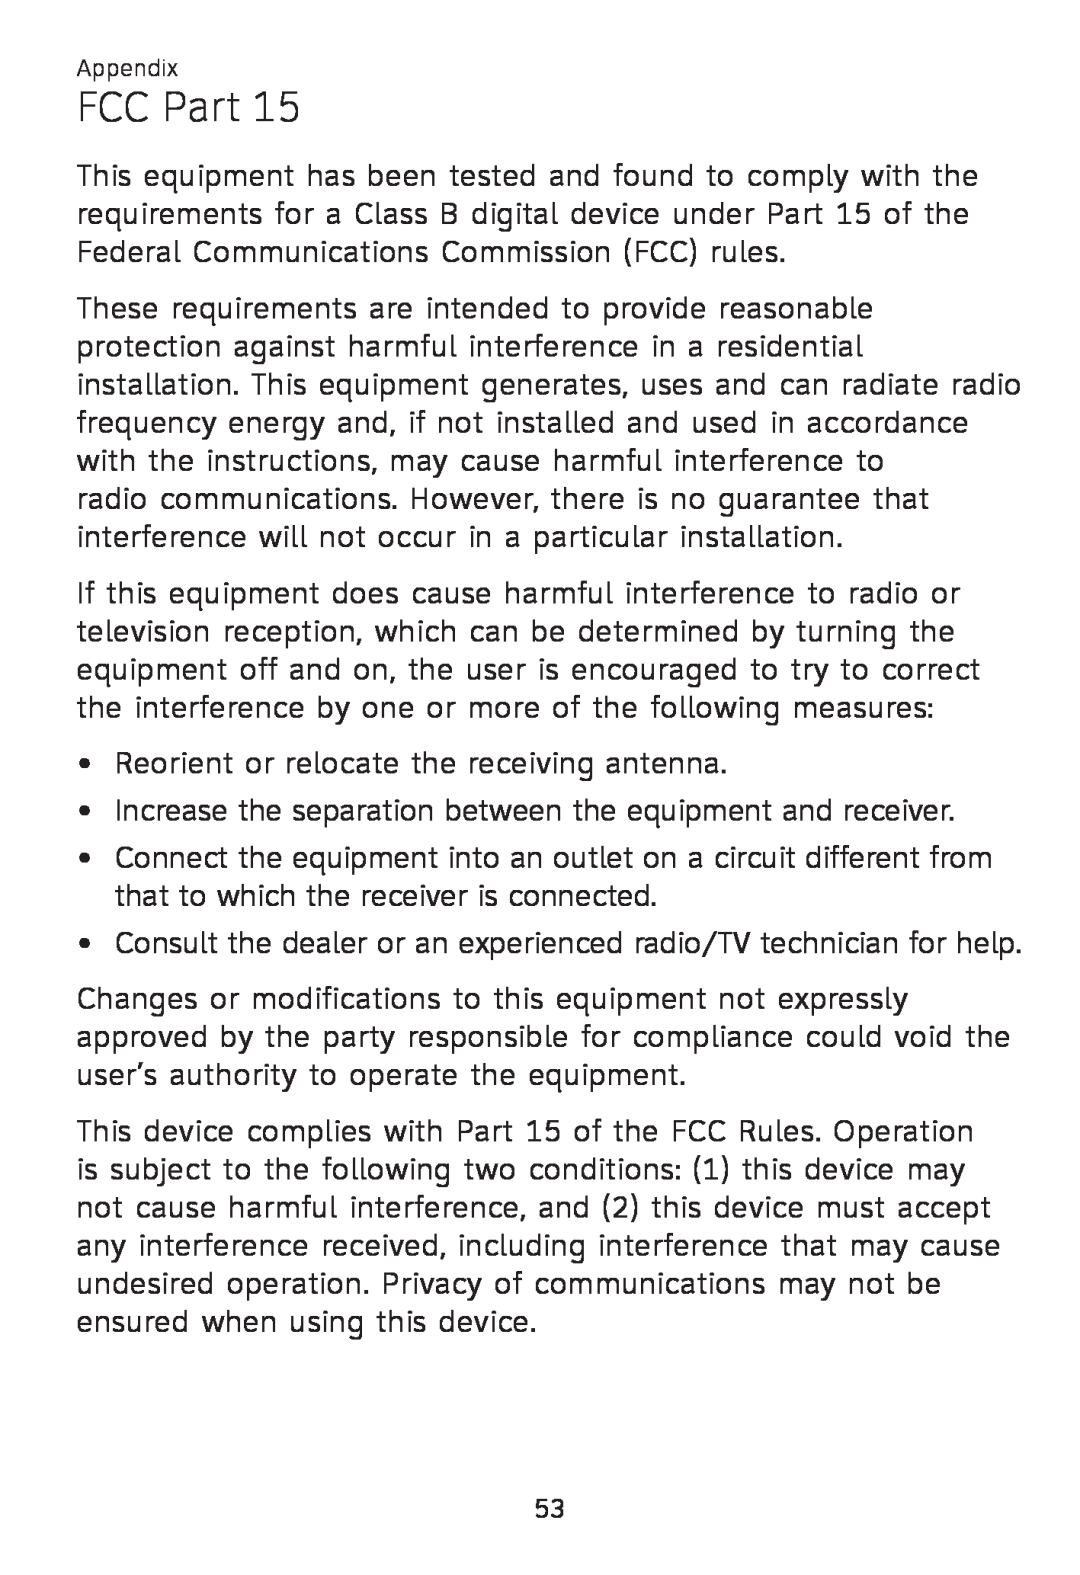 AT&T TL 7610 user manual FCC Part 